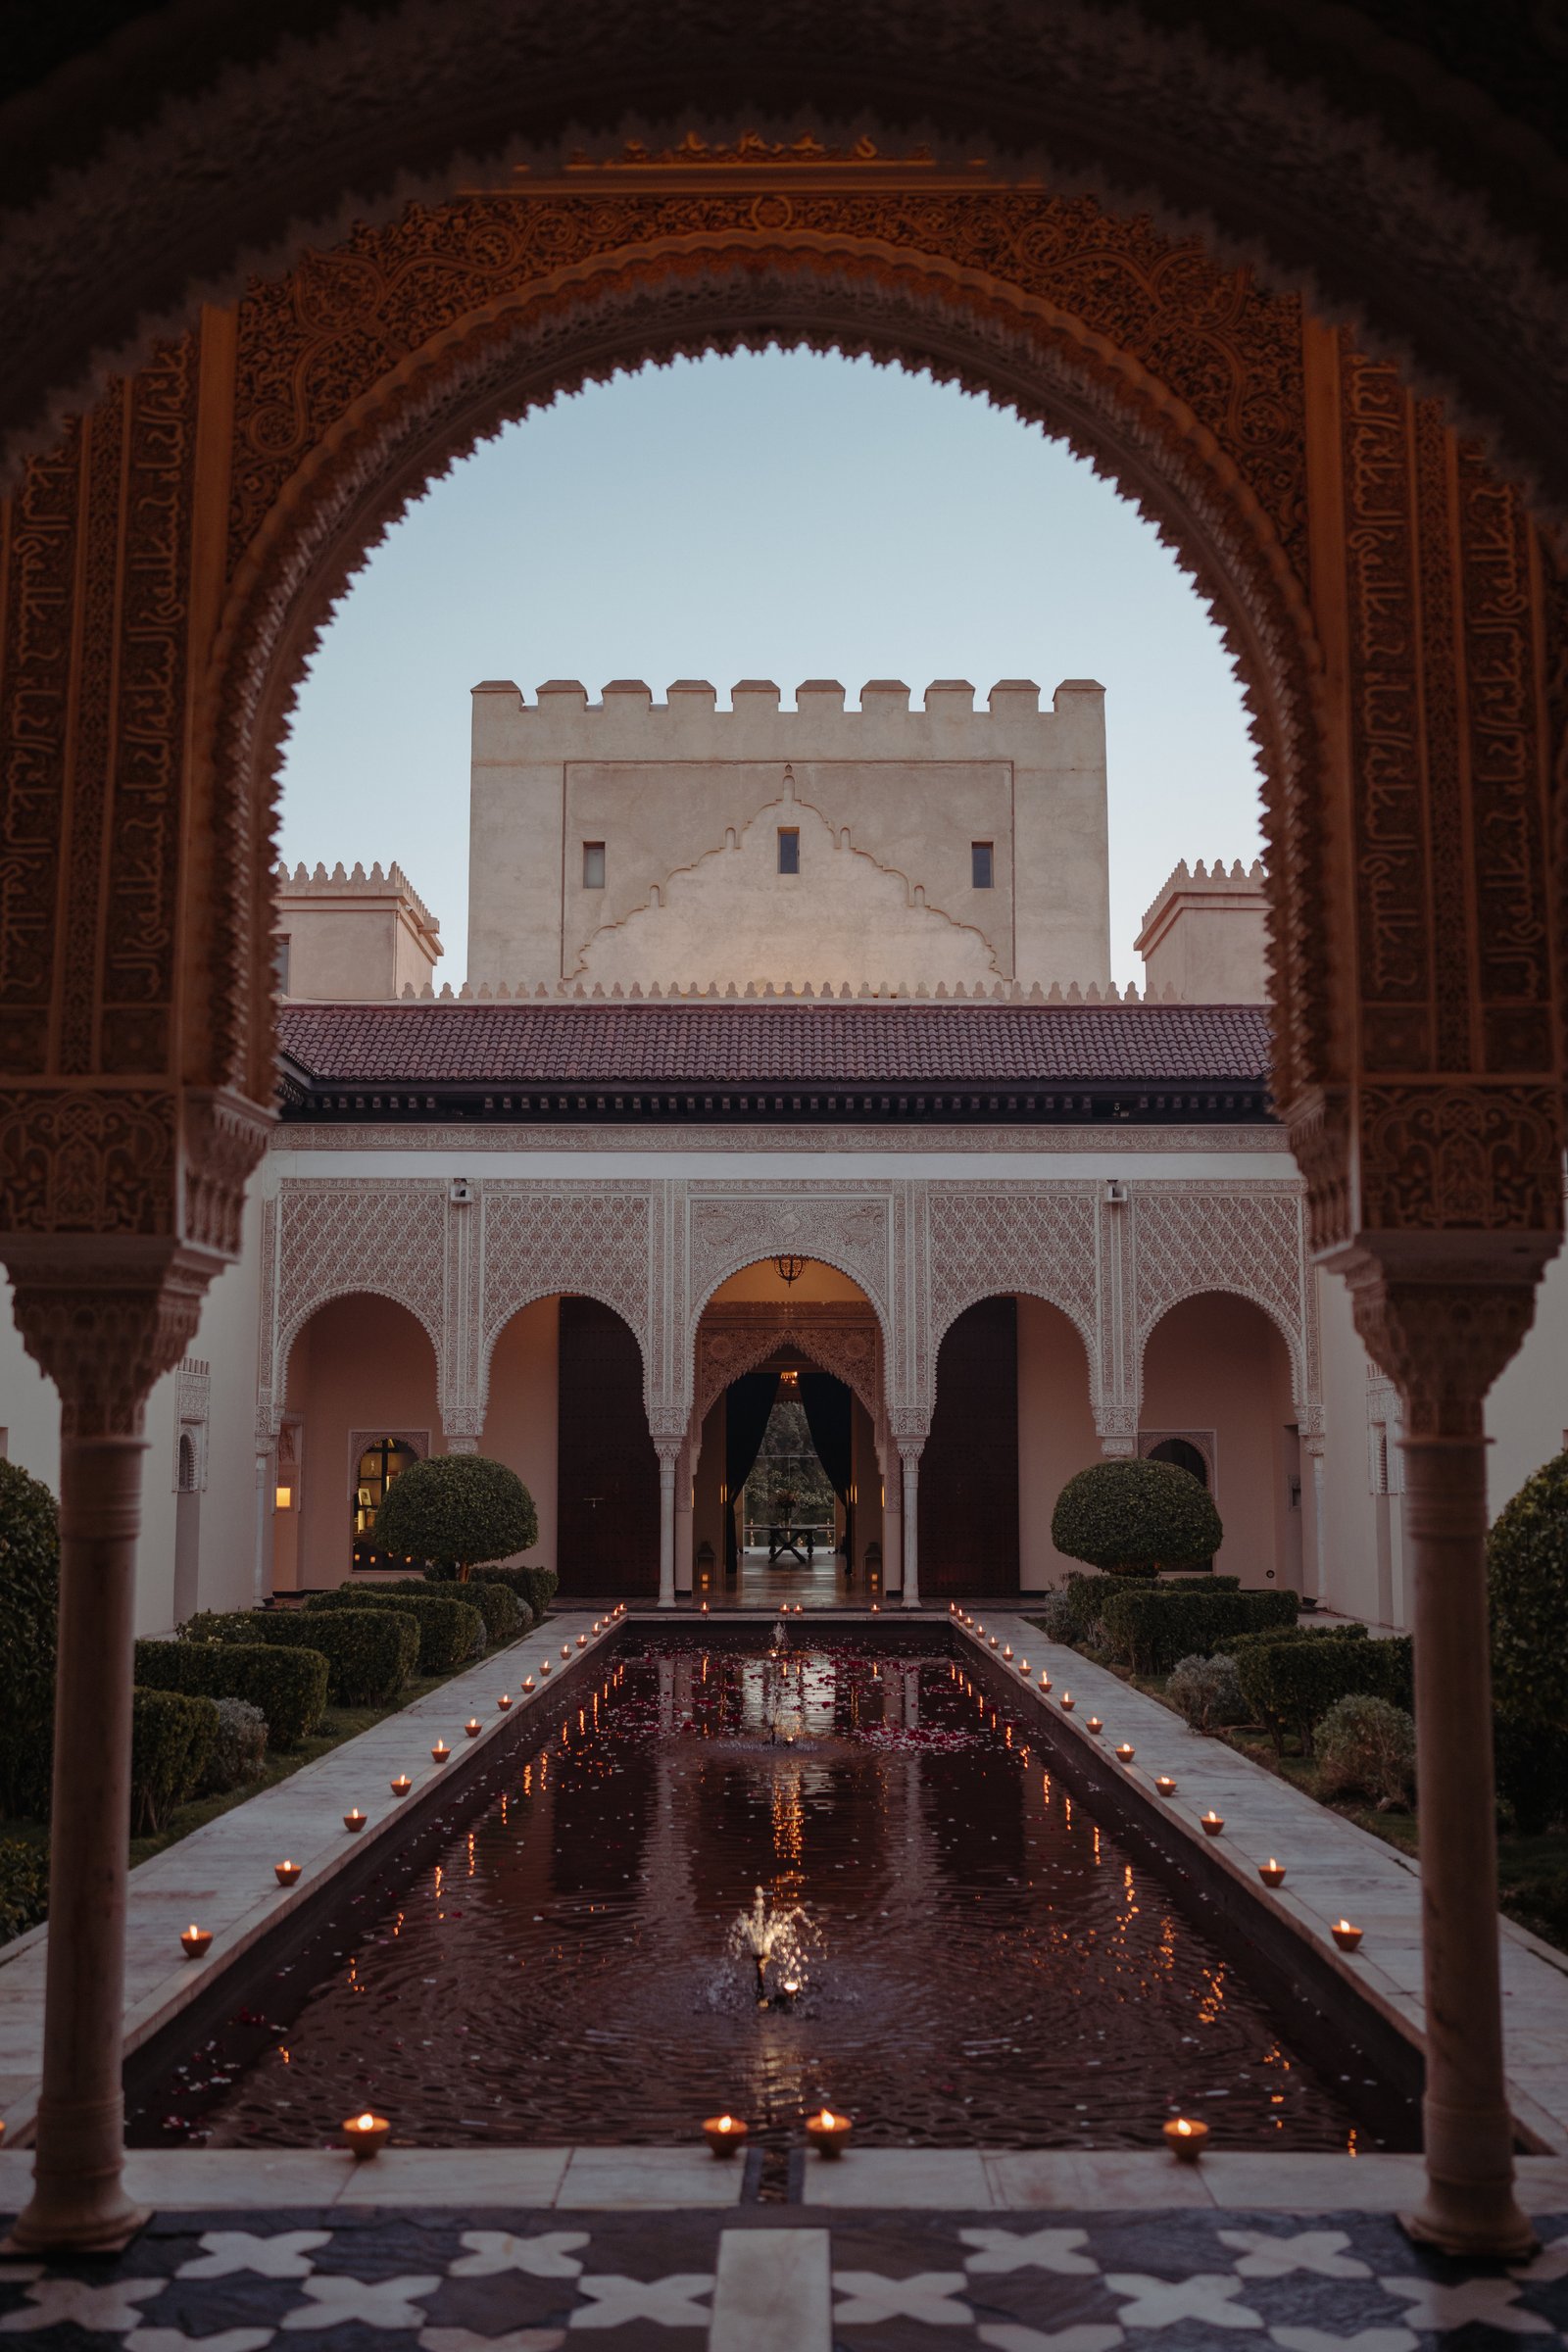 Mariage royale à Marrakech